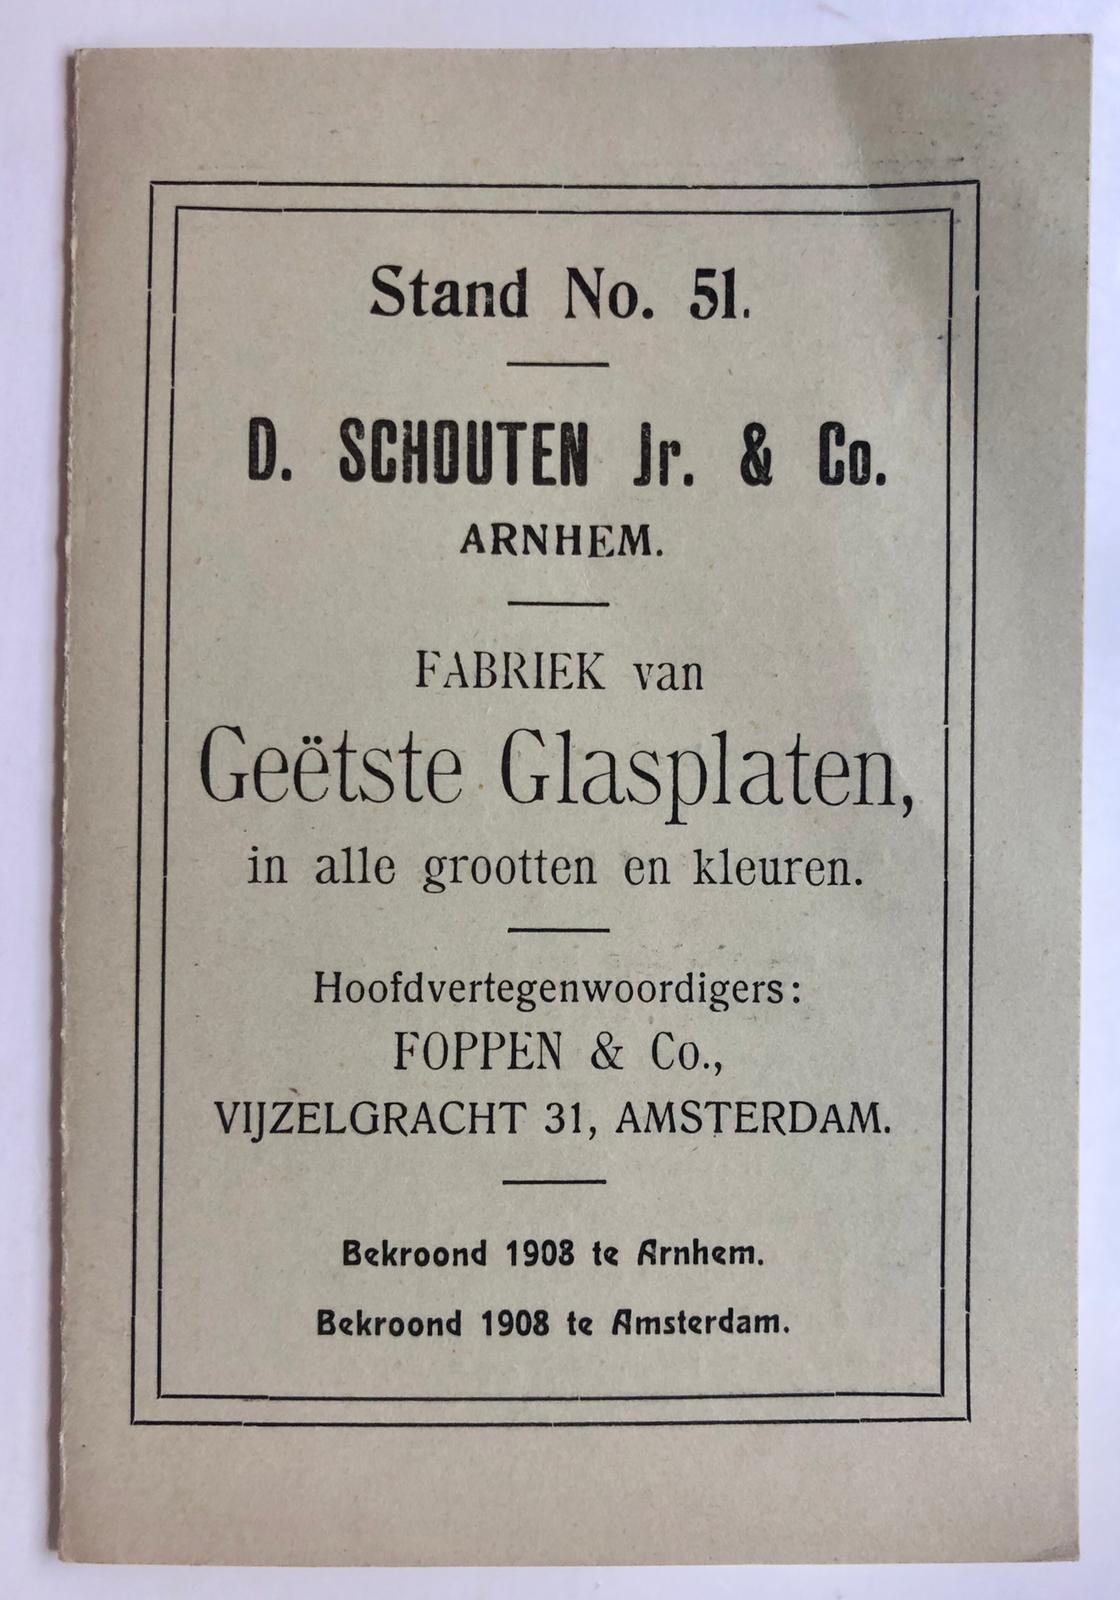  - [Printed brochure, Schouten, Geetst Glas] Folder van de firma D. Schouten Jr. & Co. te Arnhem, fabriek van getste glasplaten. Gedrukt, 4 p., ca. 1910.